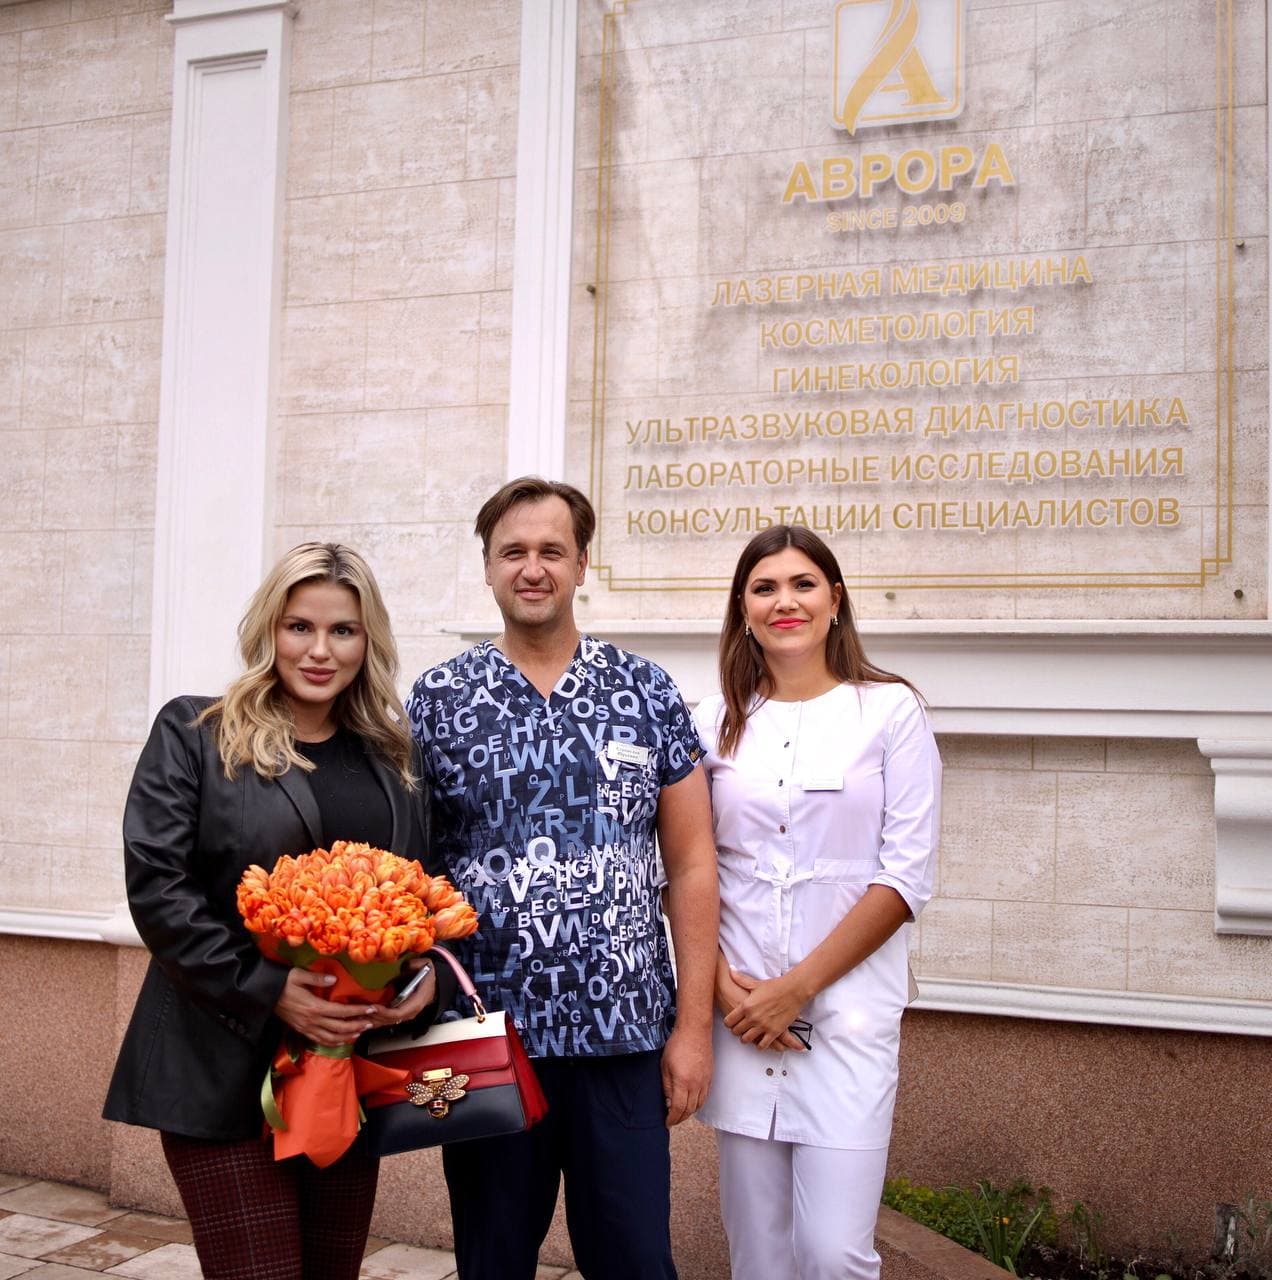 Клинику посетила знаменитая телеведущая и певица Анна Семенович